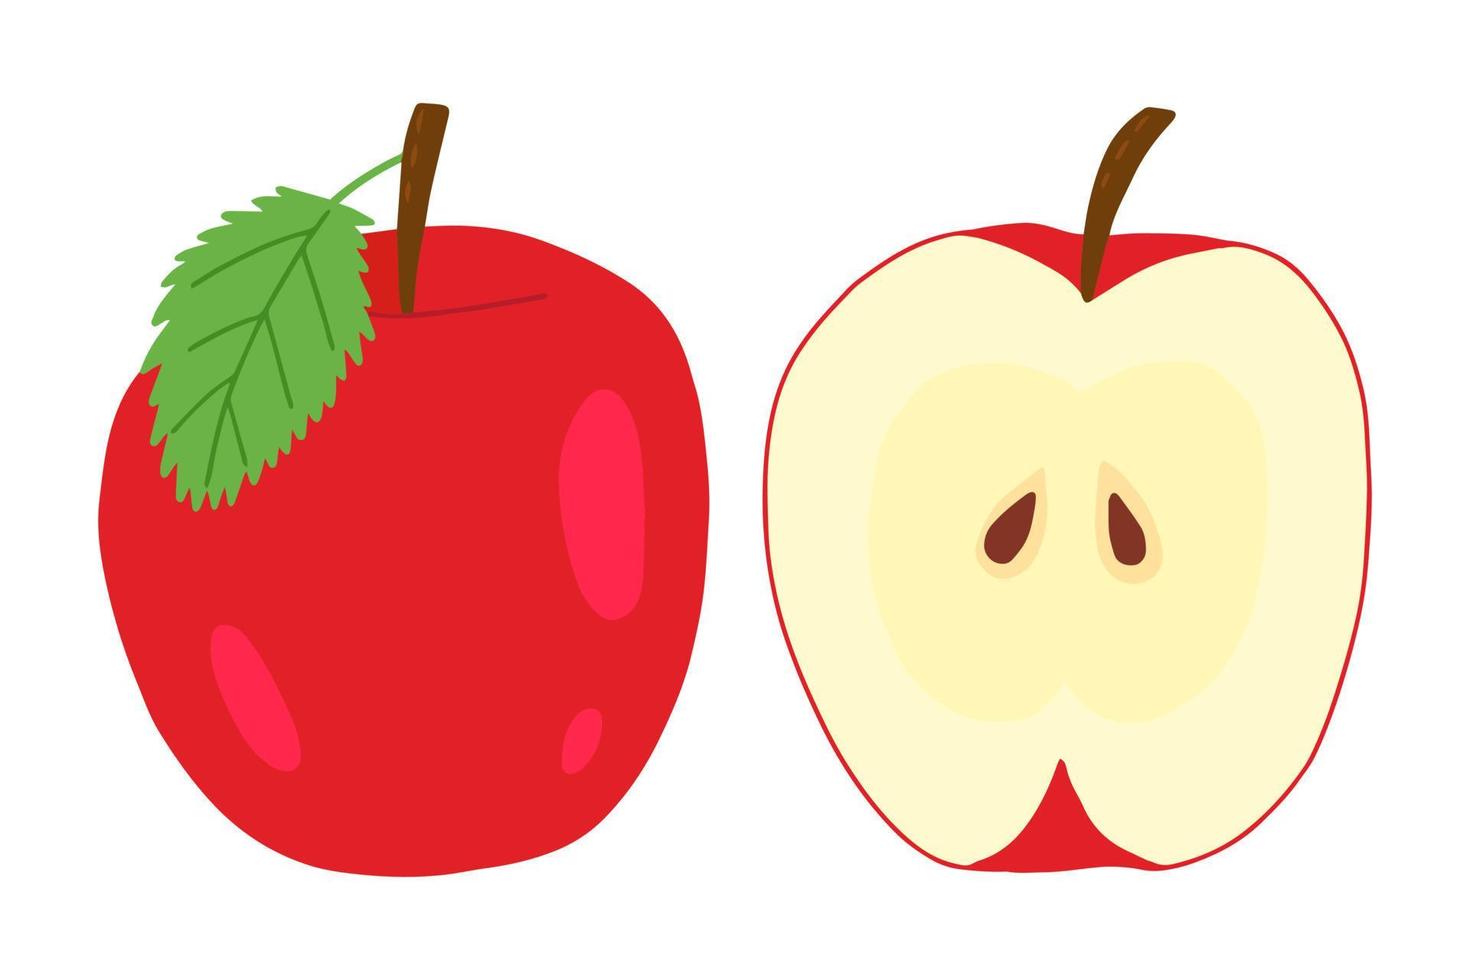 hela äpple amd äpple i sektion vektor ClipArt. hand dragen äpplen illustration